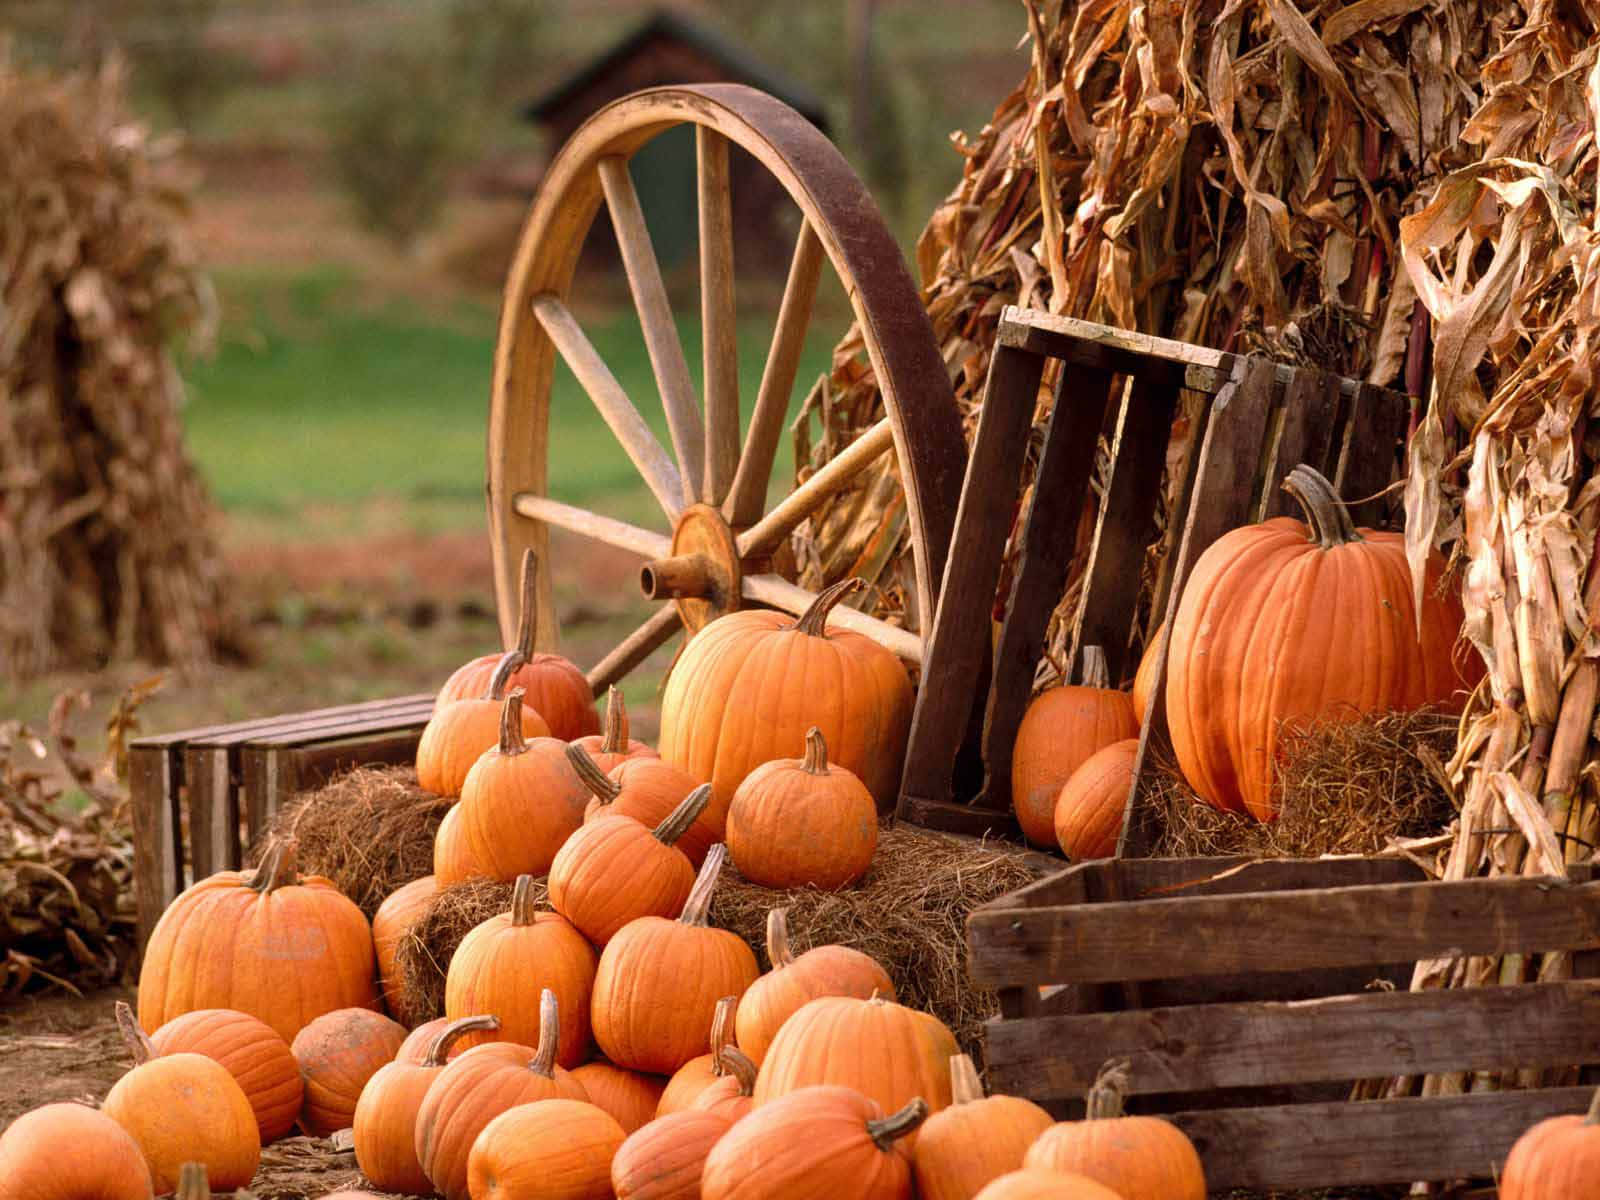 Festive Fall Pumpkin Display